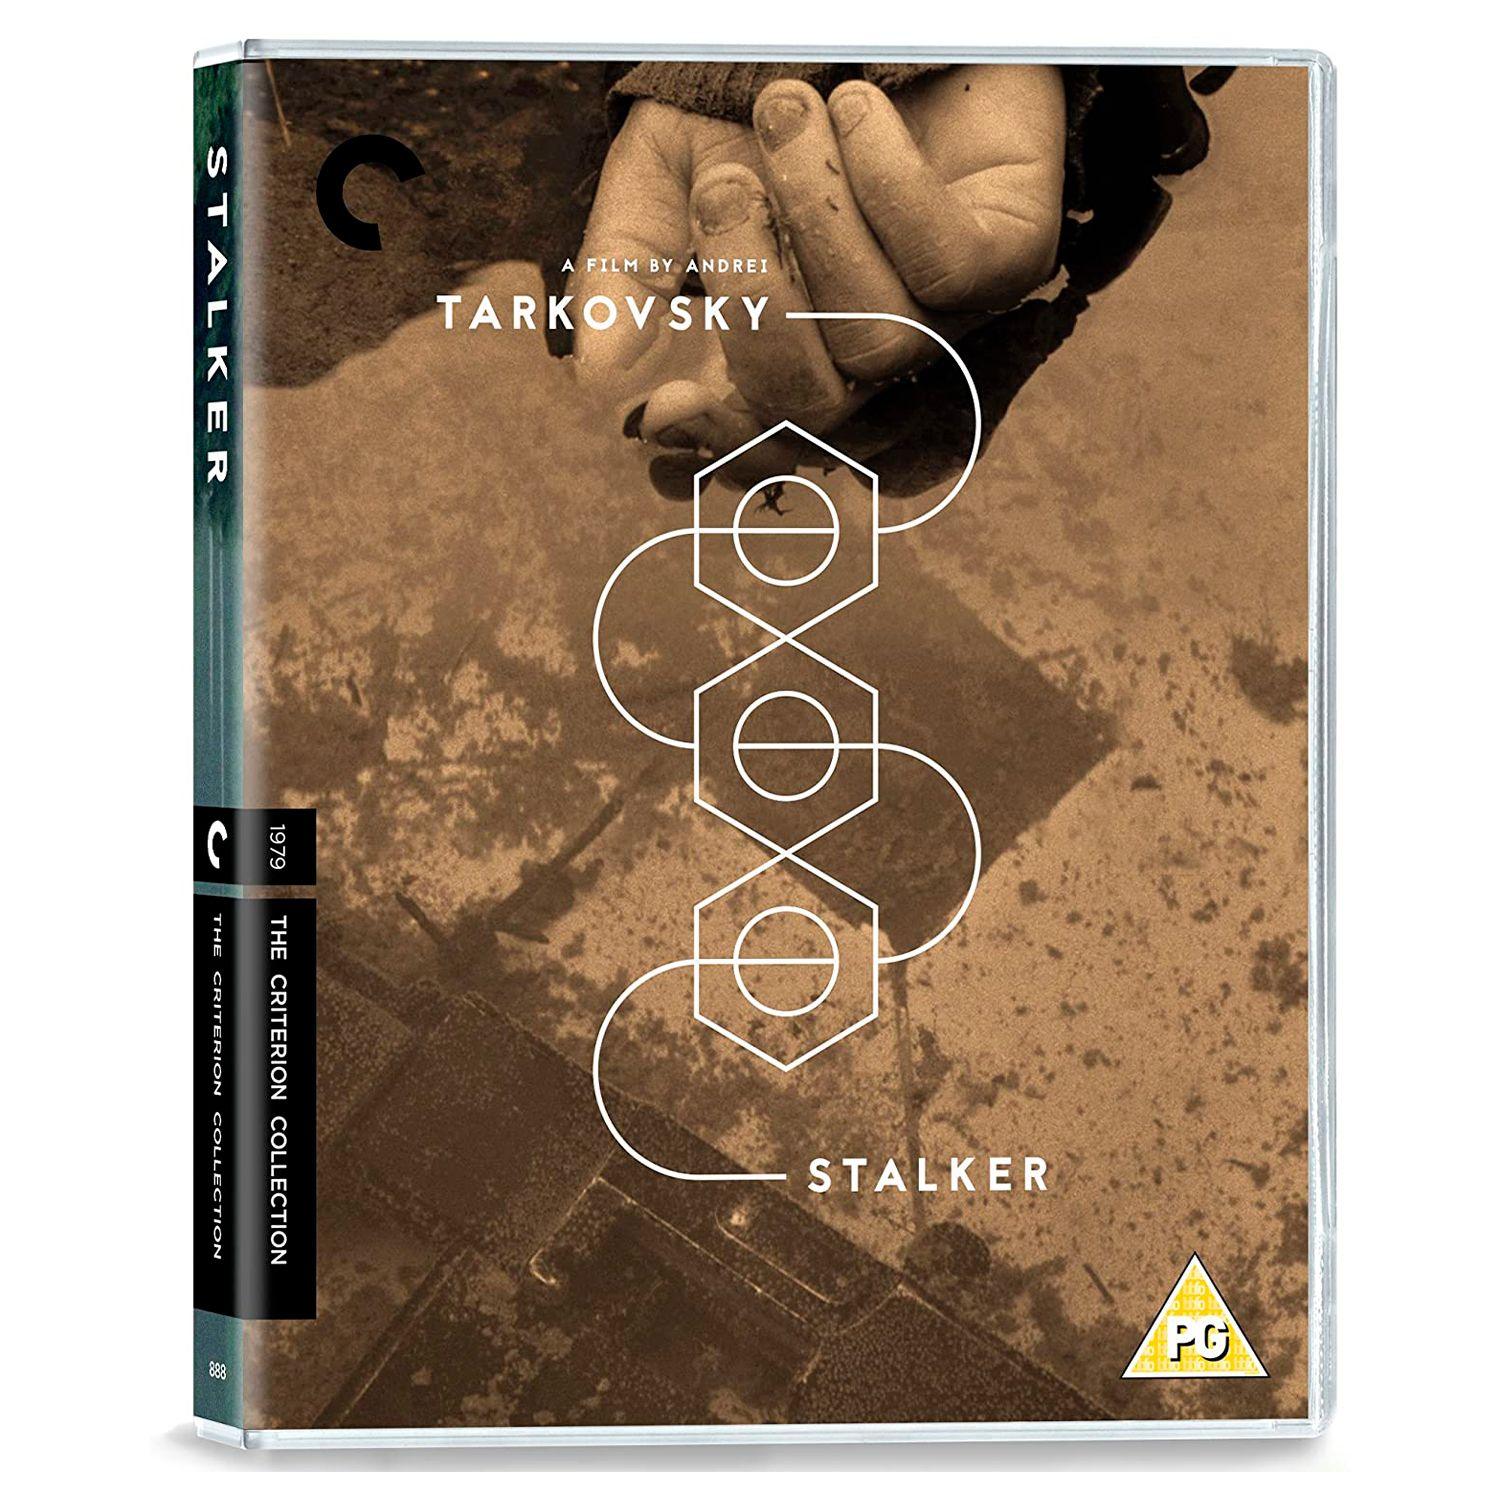 Сталкер (Blu-ray) (Criterion)